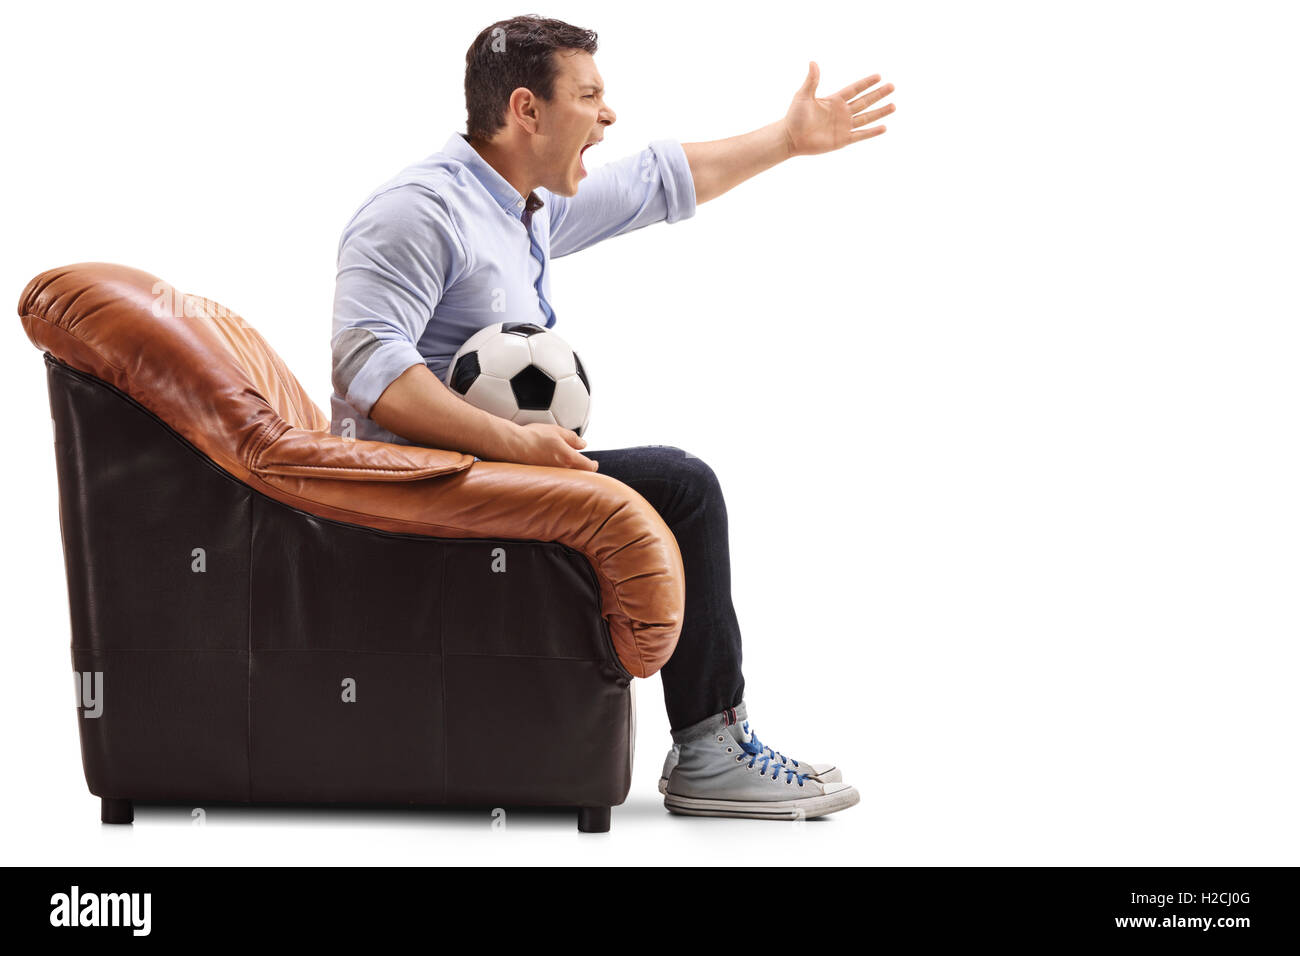 Infastiditi uomo seduto su una poltrona a guardare il calcio e urla isolati su sfondo bianco Foto Stock